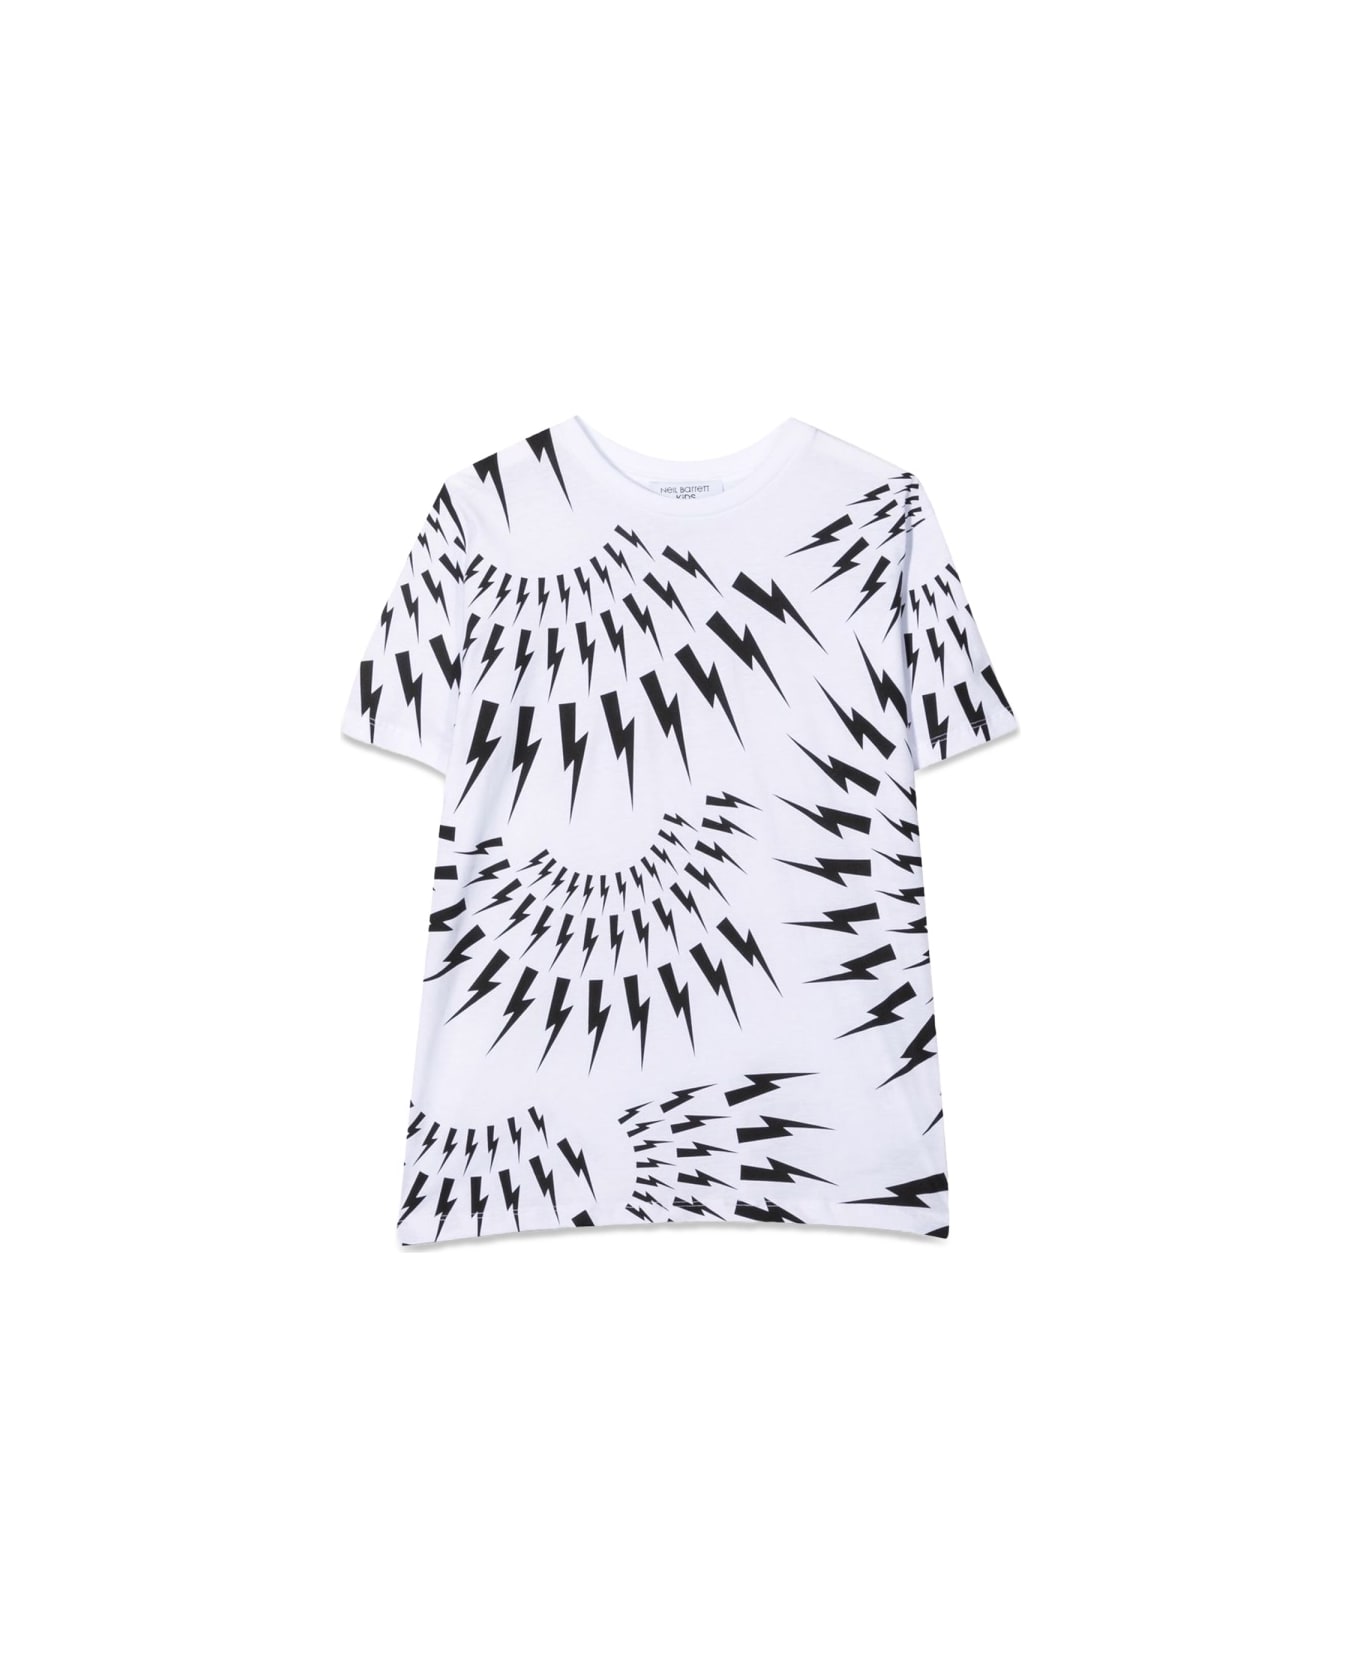 Neil Barrett Jersey Boy T-shirt - WHITE Tシャツ＆ポロシャツ